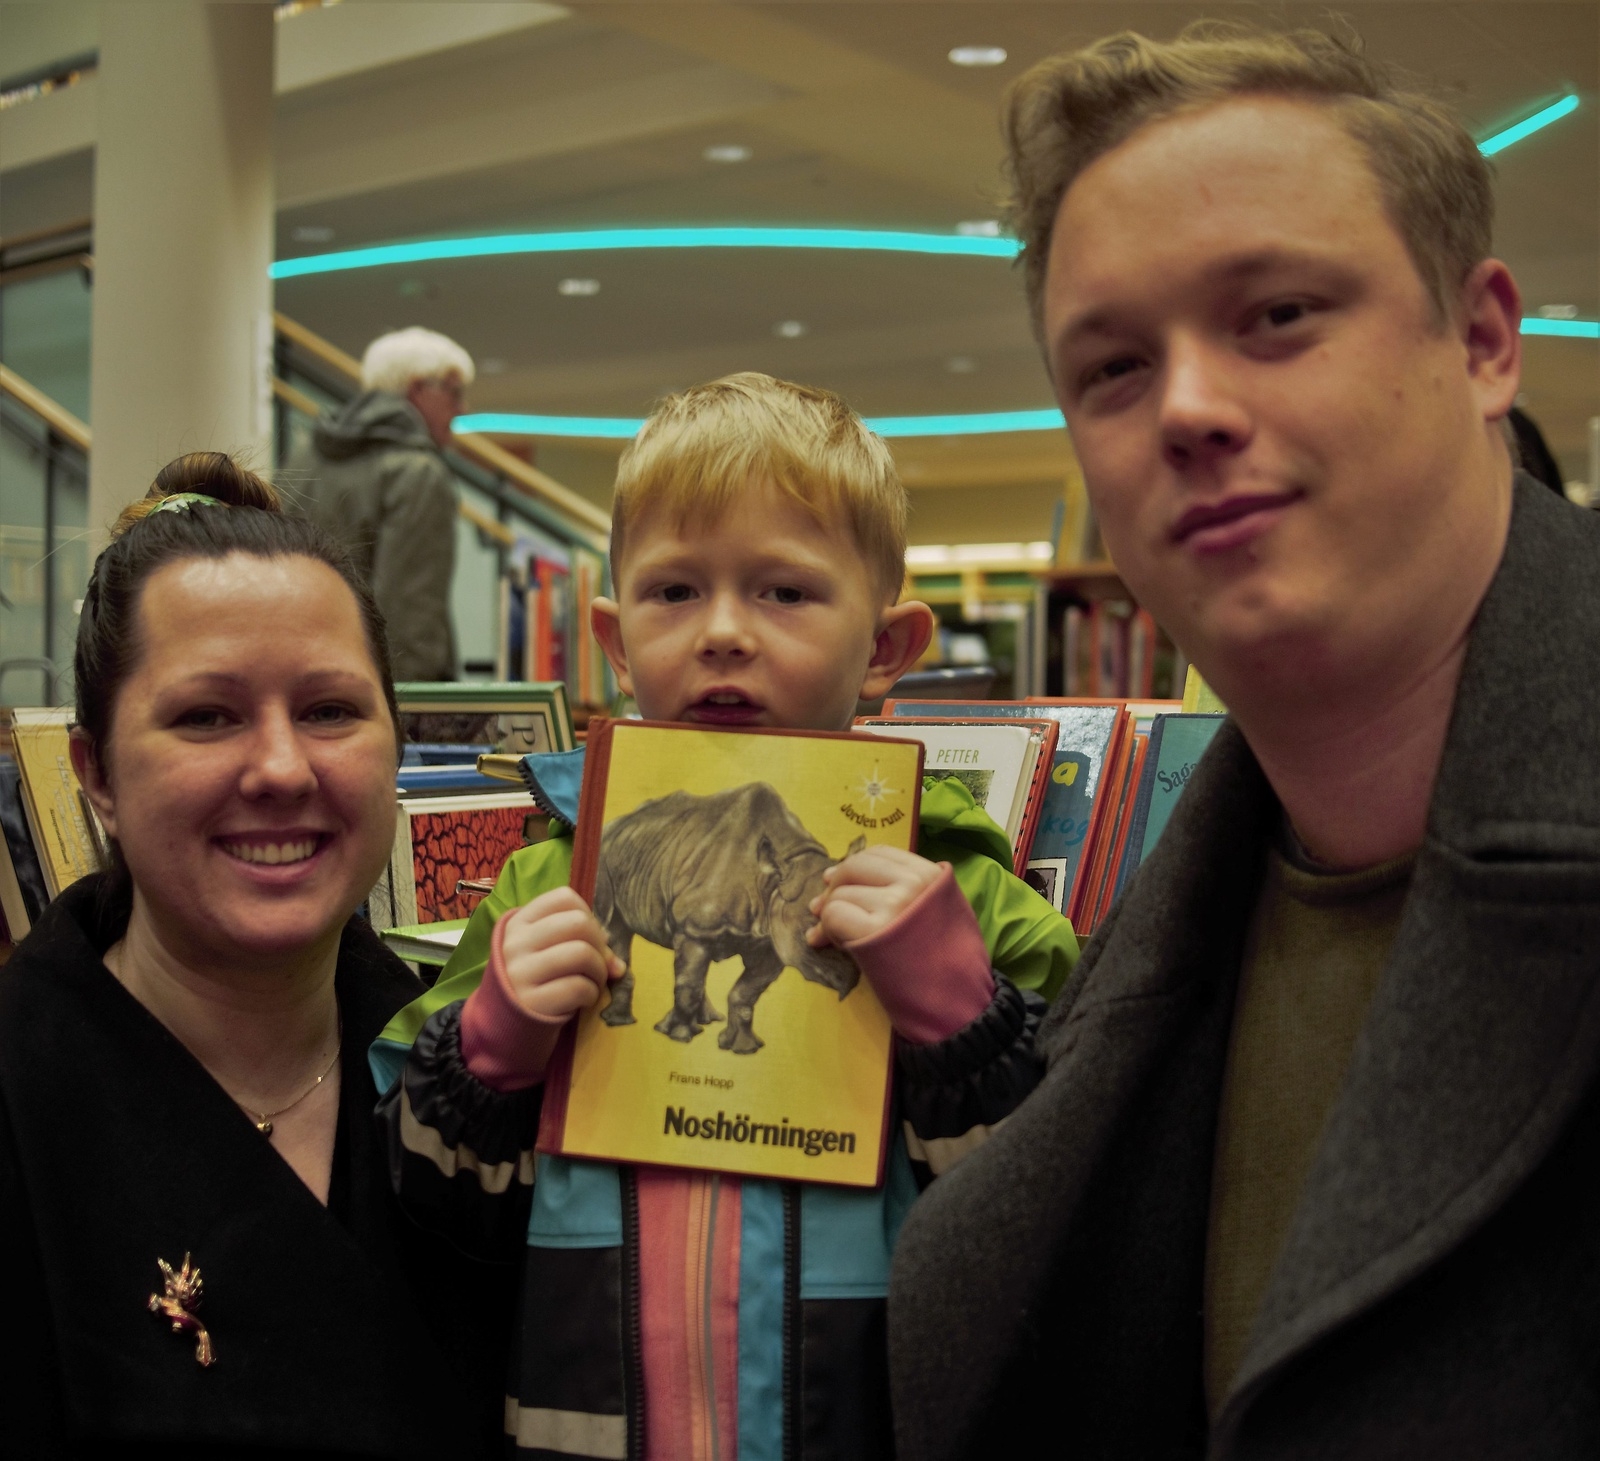 Johannes Niklasson är nöjd med sin nya bok. Fast för säkerhets skull plockade mamma och pappa på sig en hel bunte.